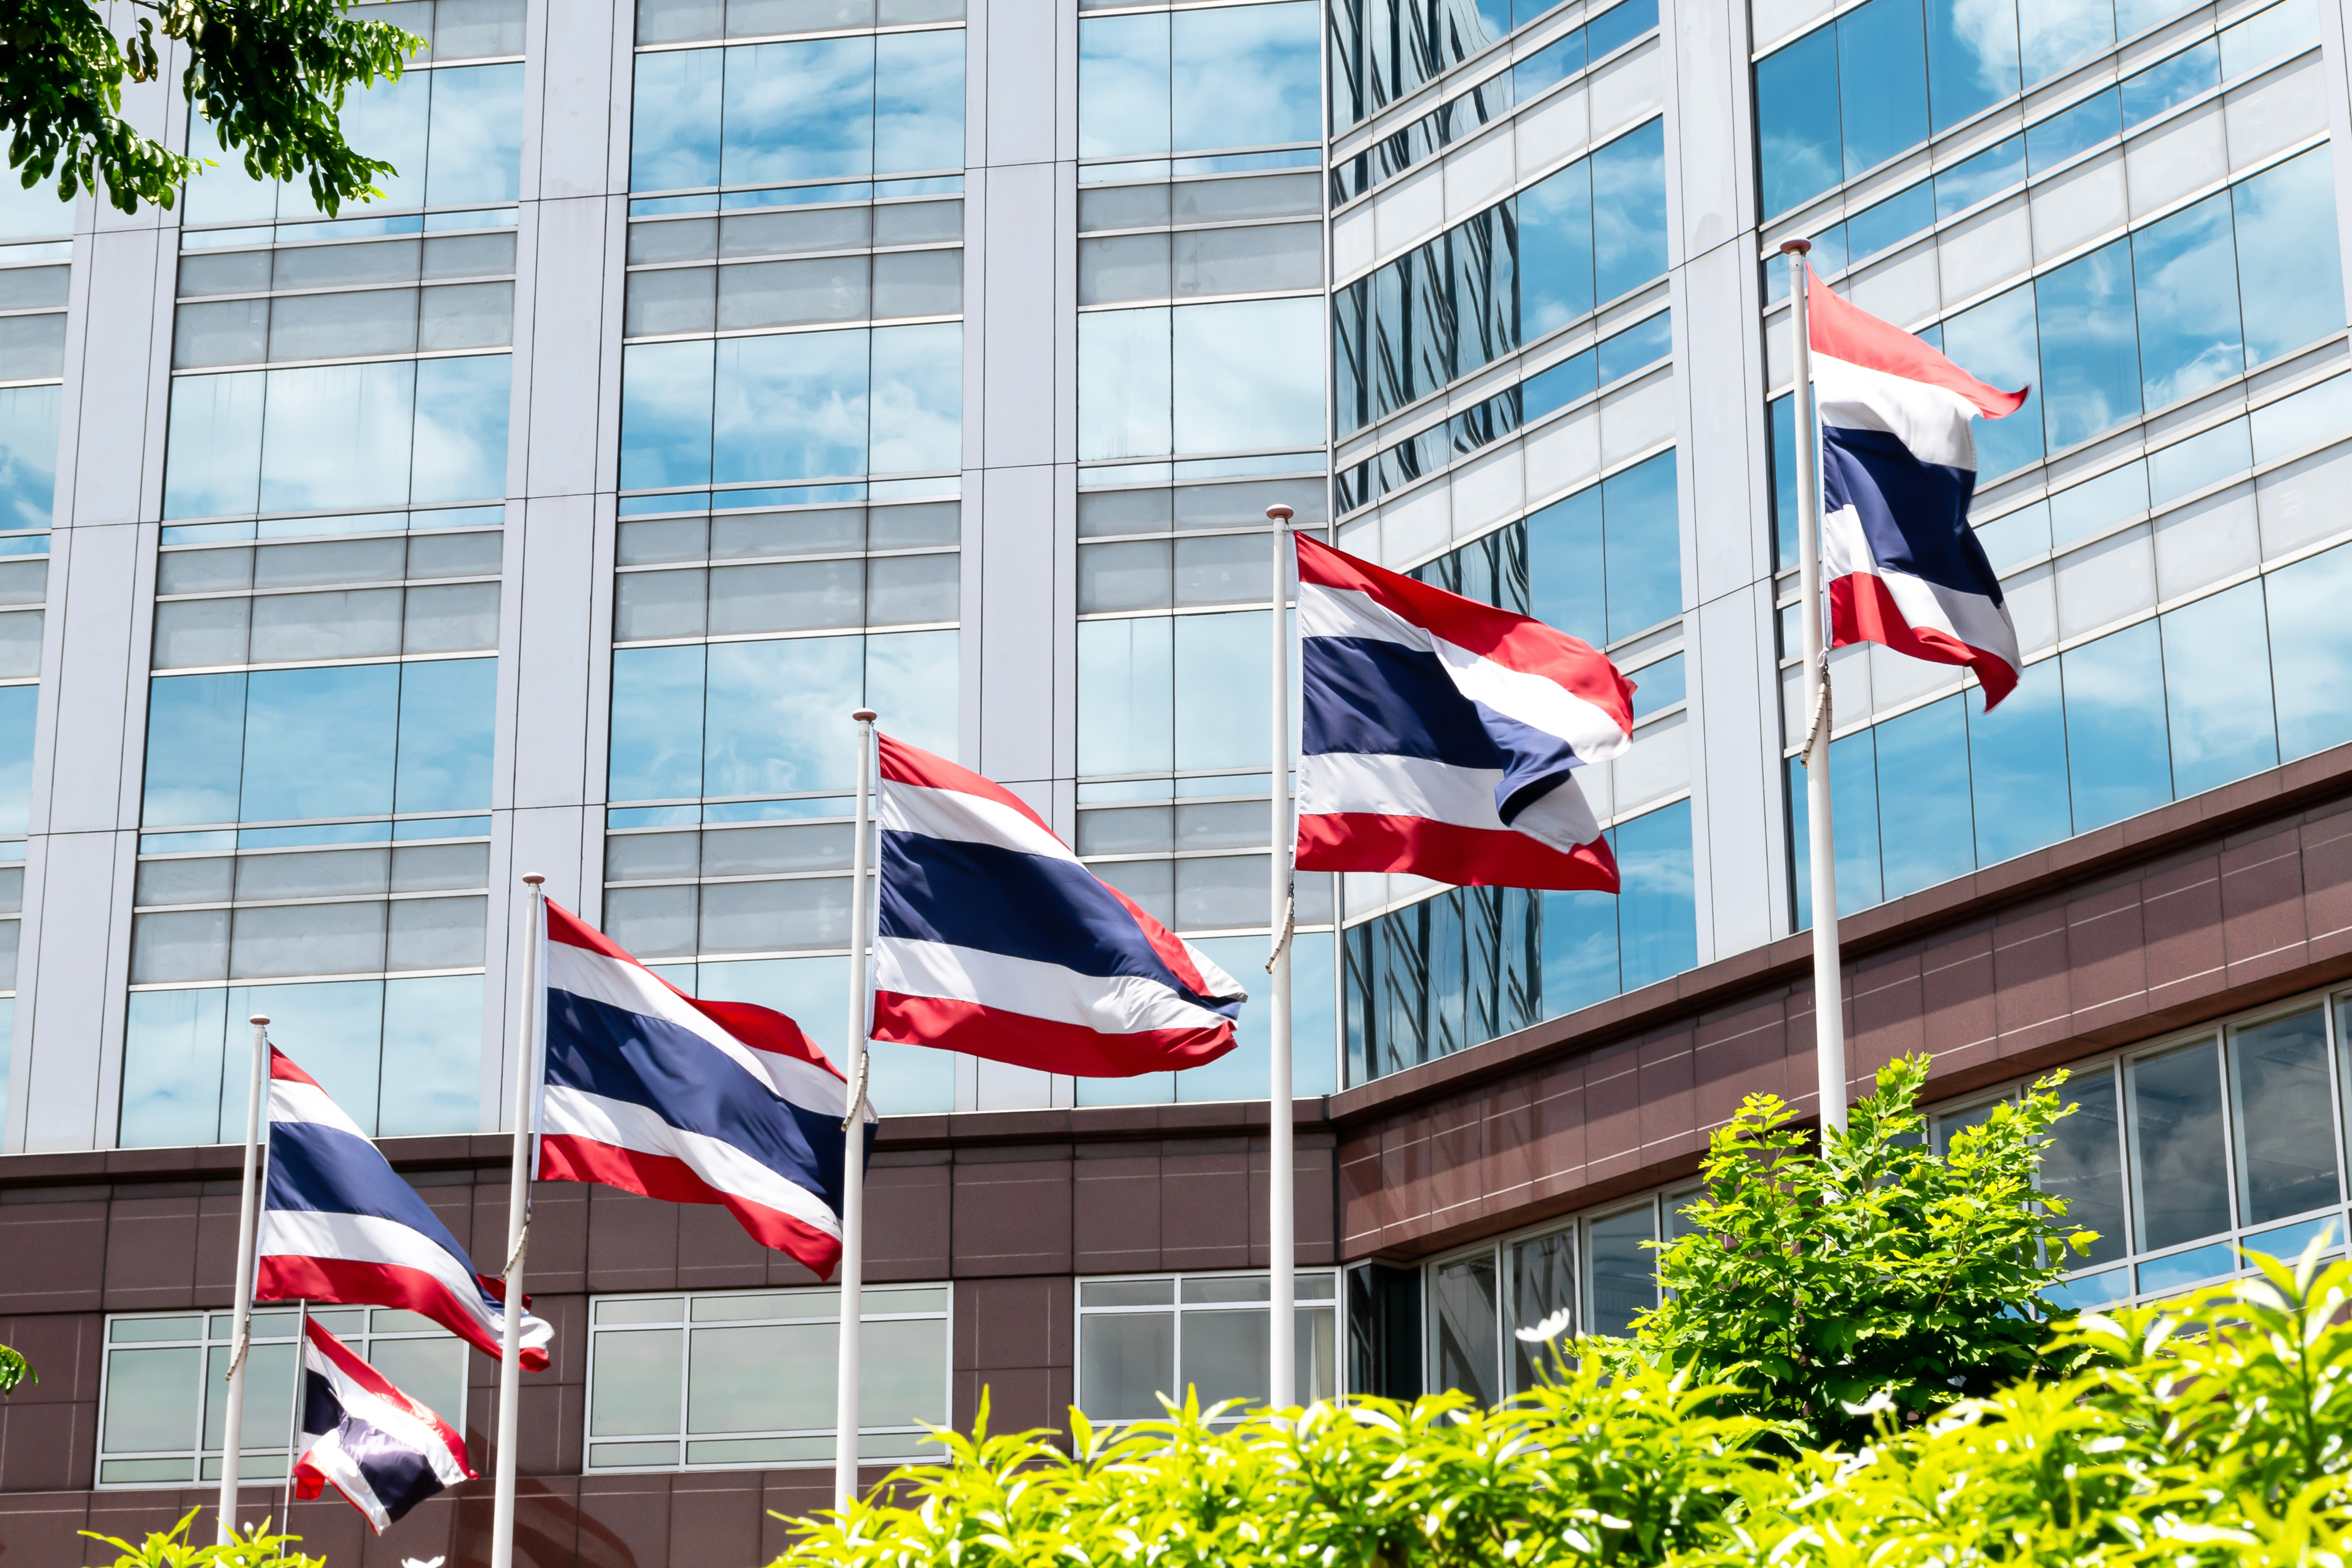 Flags symbolize Thai citizenship